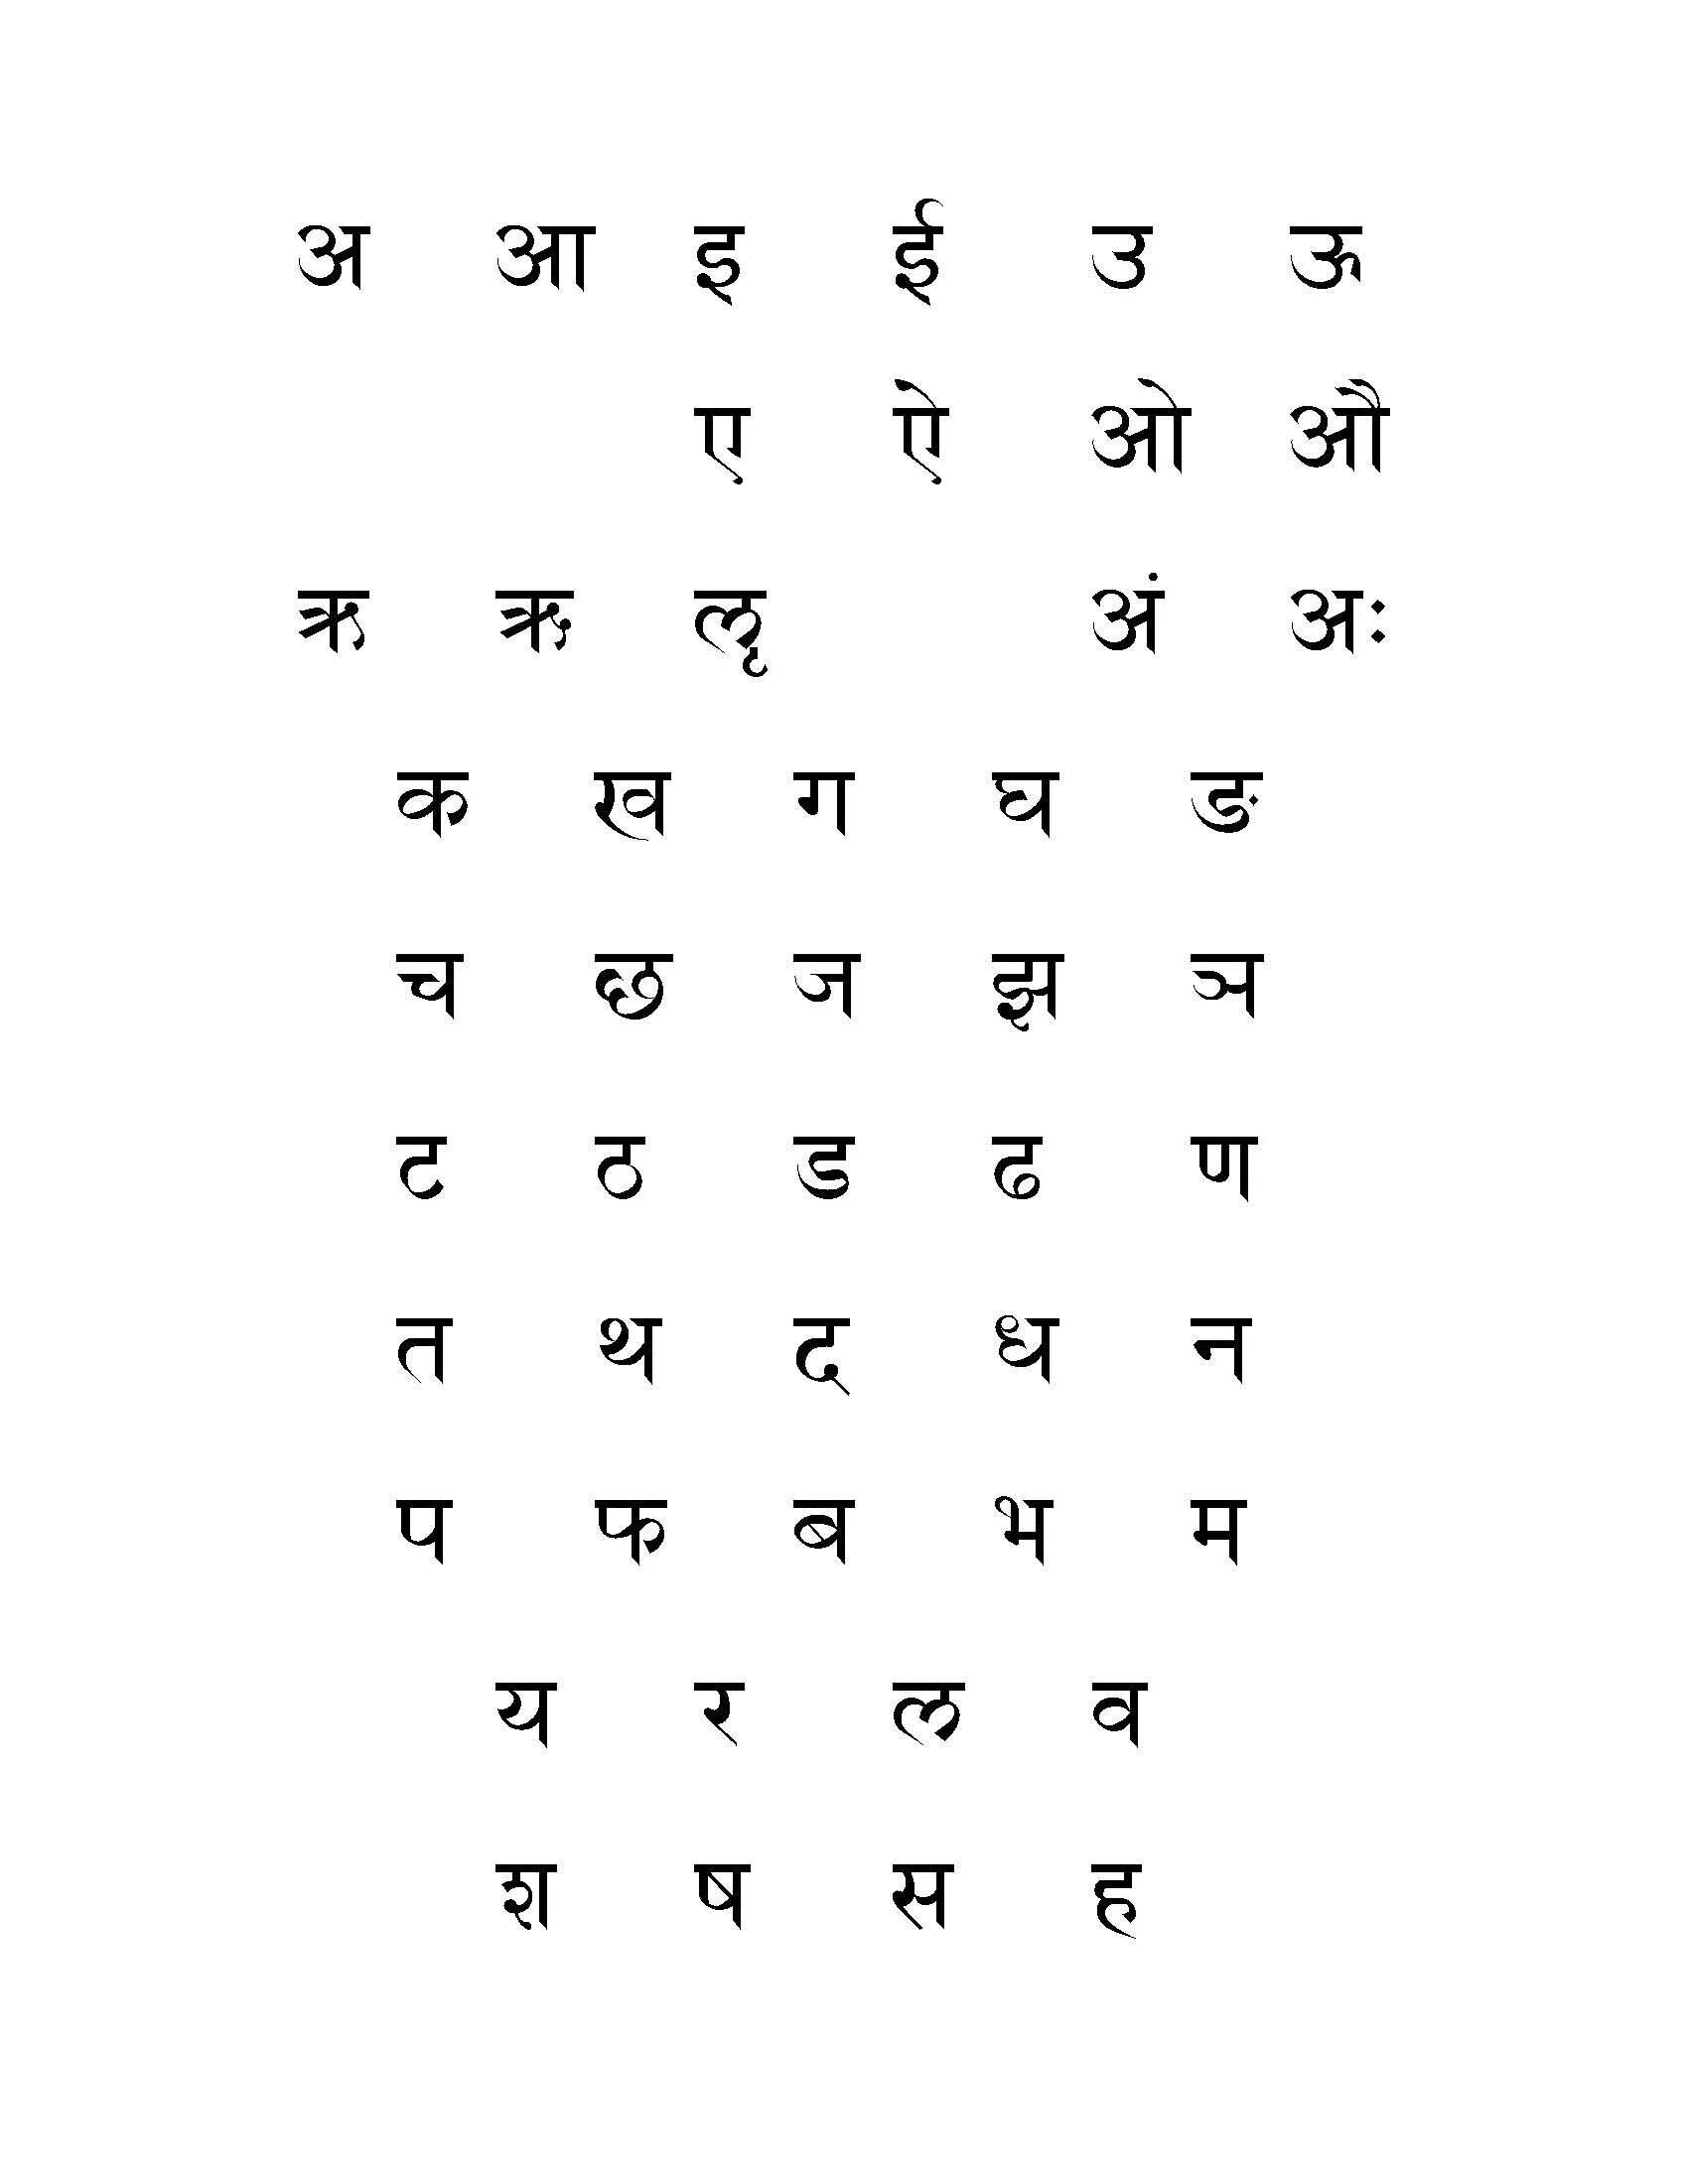 Древний индийский буквы. Деванагари санскрит. Письменность деванагари. Санскритская письменность алфавит. Буквы санскрита.